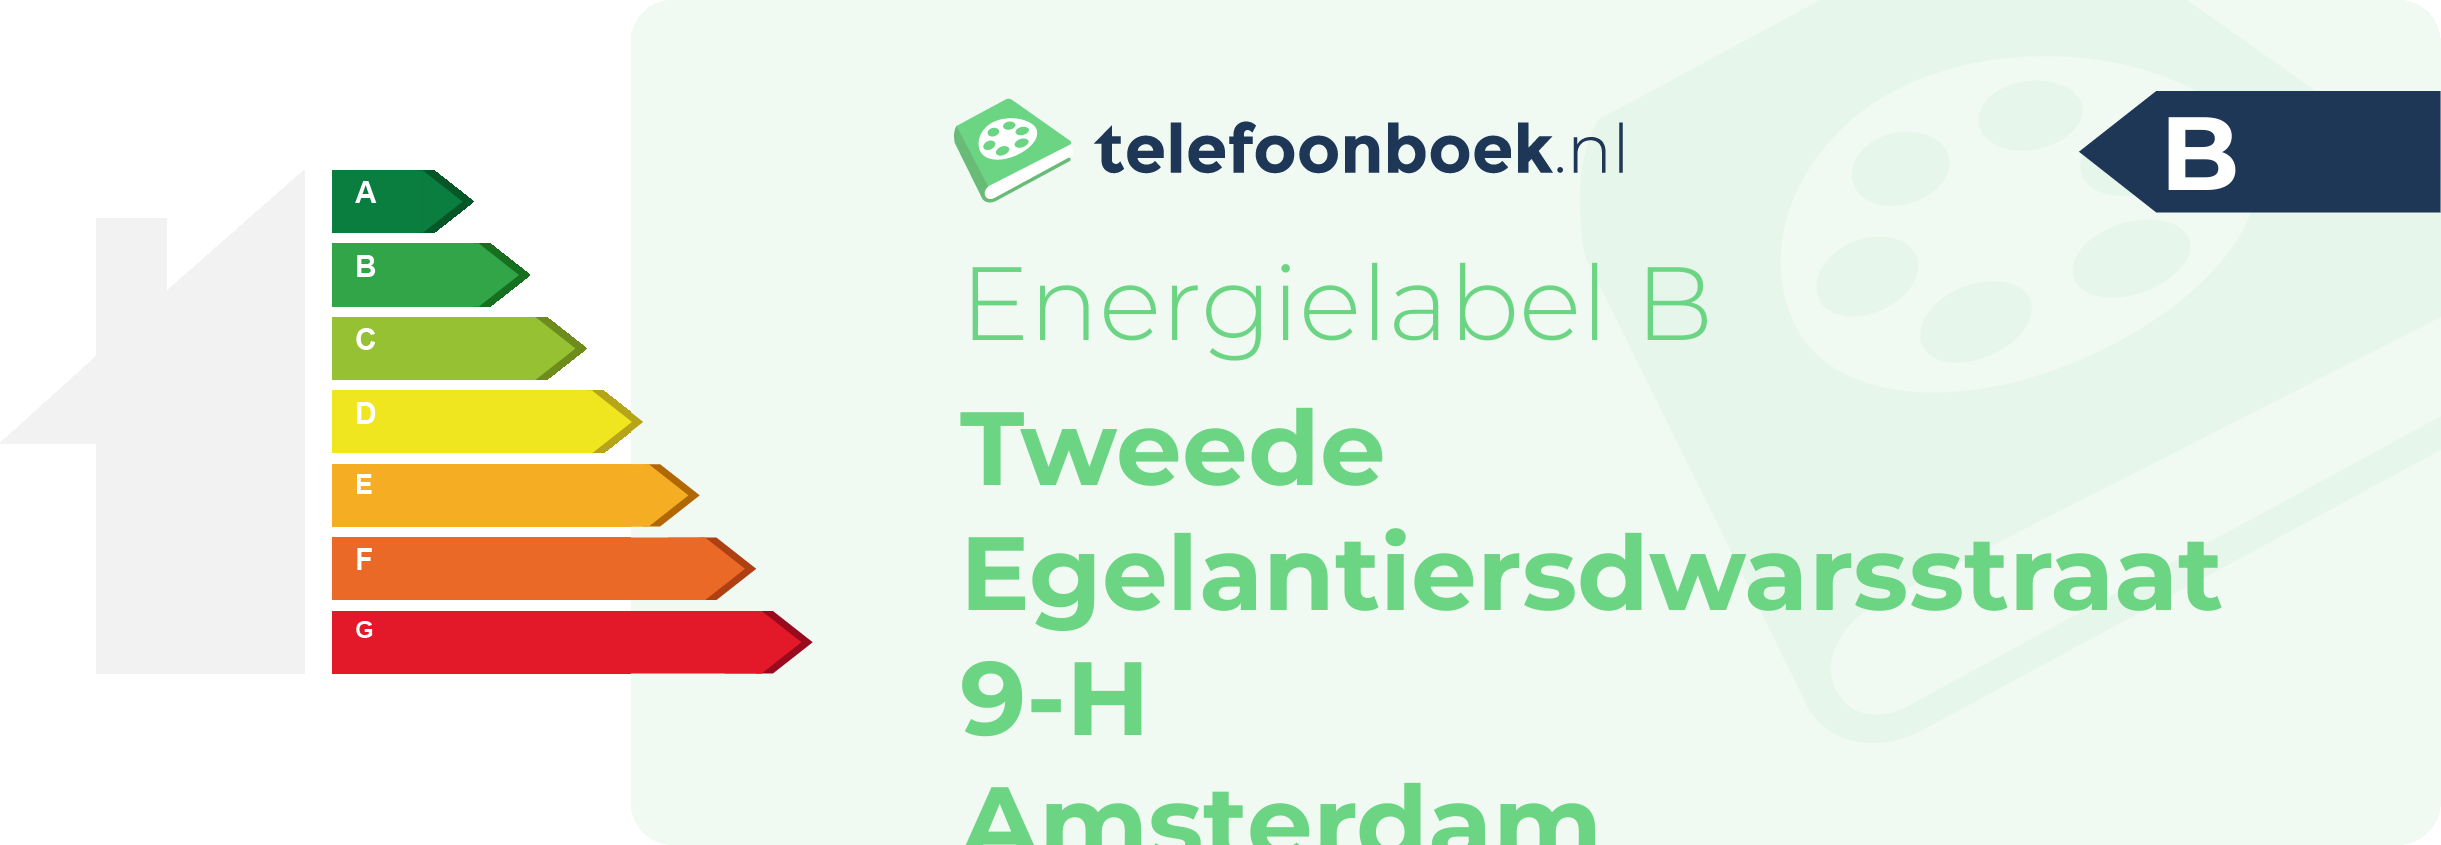 Energielabel Tweede Egelantiersdwarsstraat 9-H Amsterdam